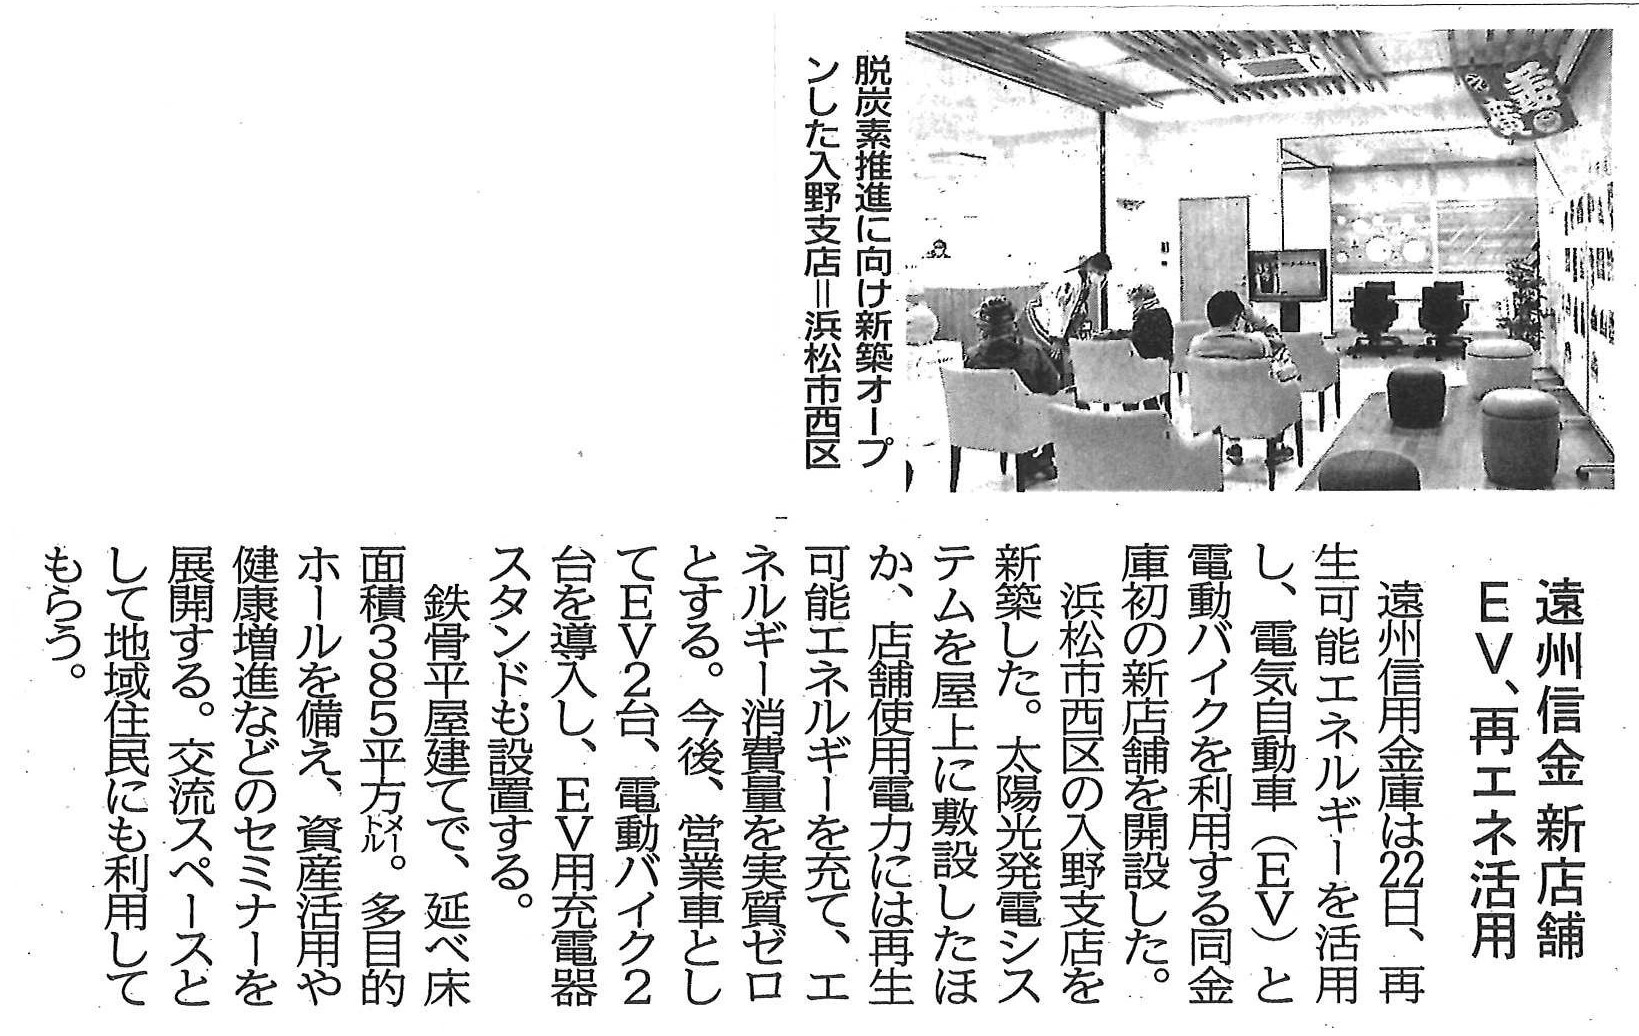 遠州信用金庫様入野支店が静岡新聞に掲載されました。